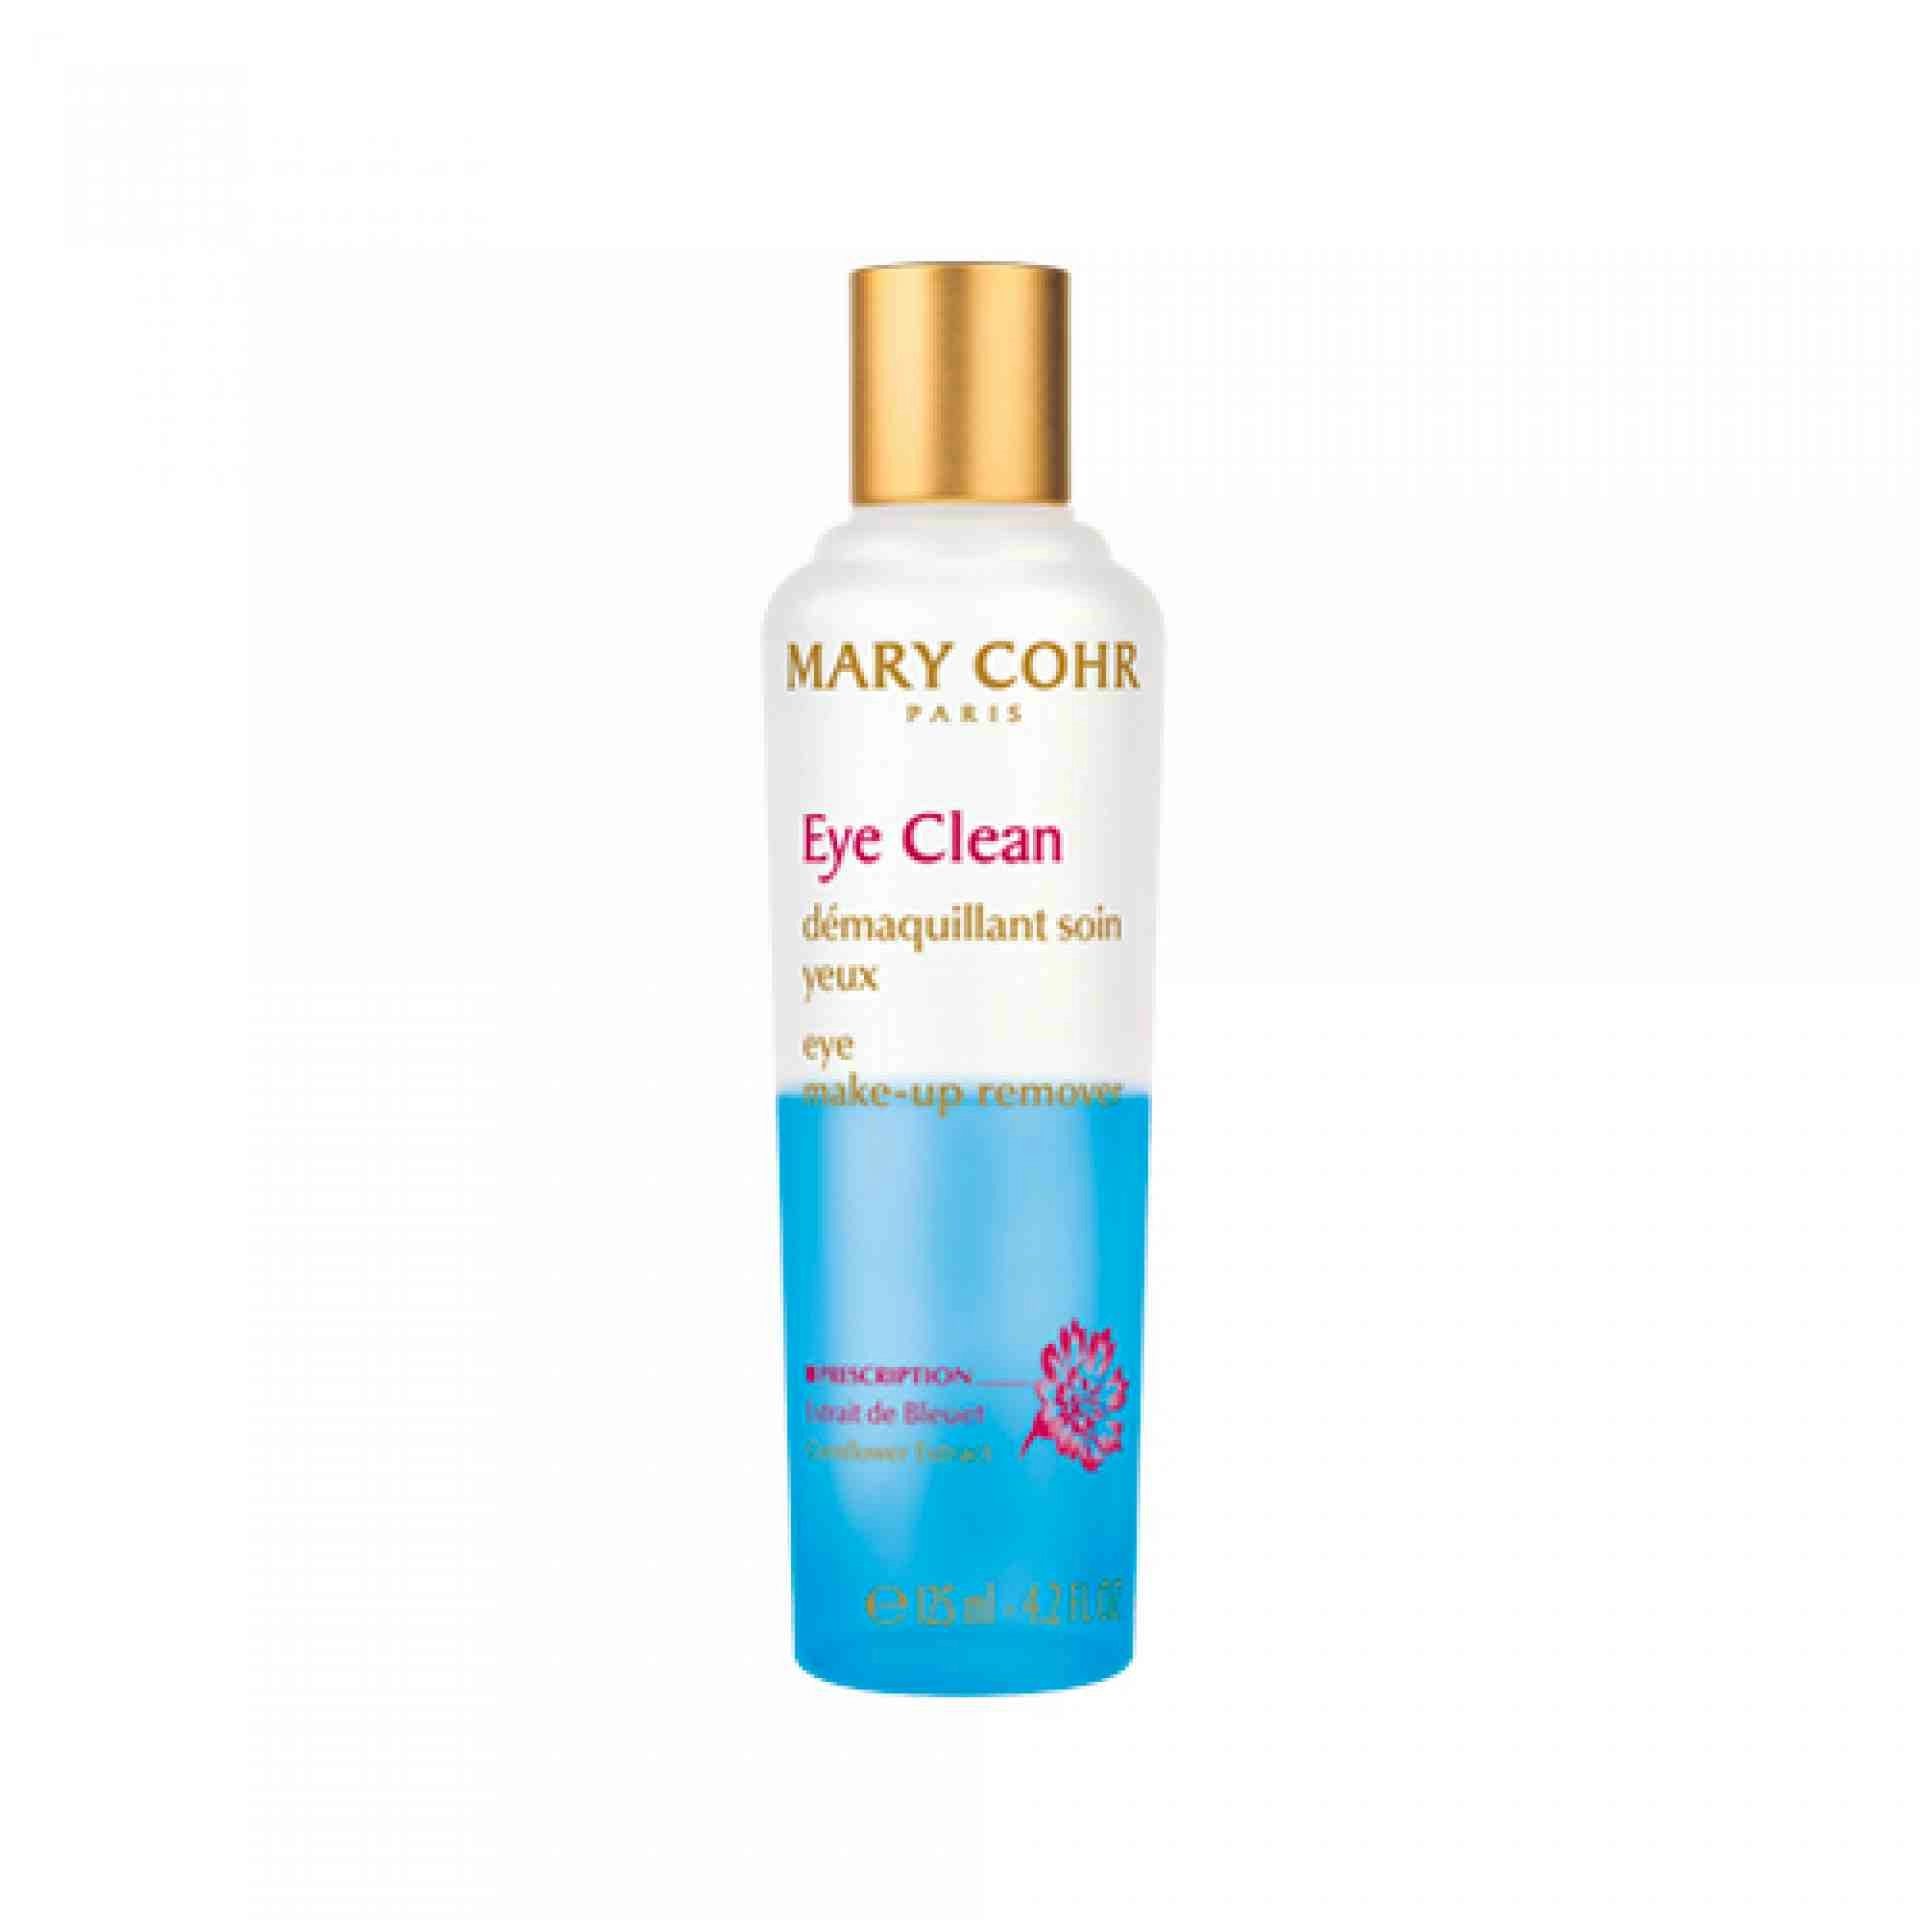 Eye Clean | Desmaquillante de Ojos 125ml - Mary Cohr ®